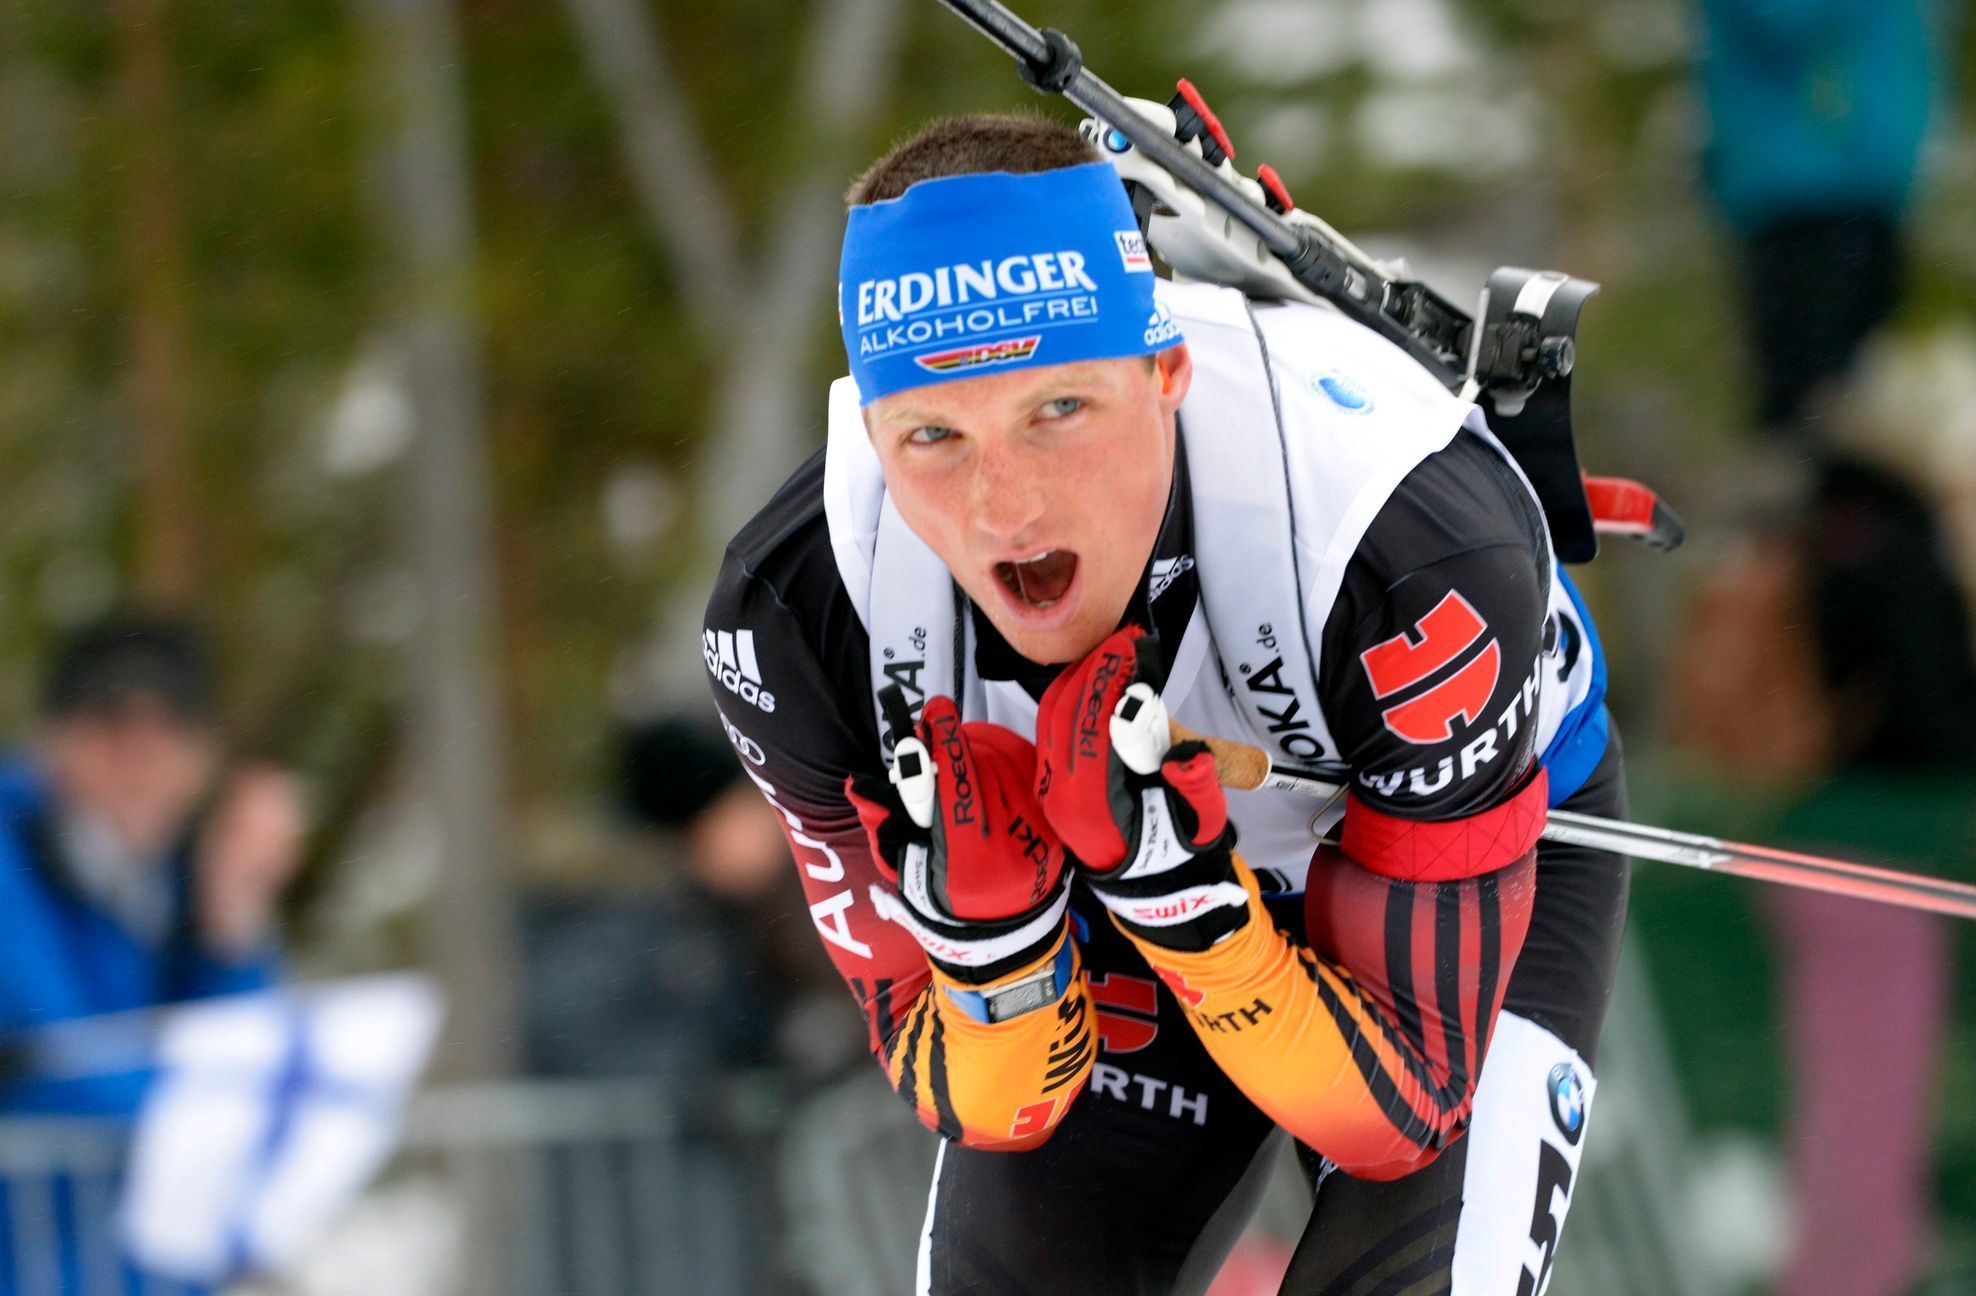 MS biatlonu 2015, stíhačka M: Erik Lesser si jede pro vítězství